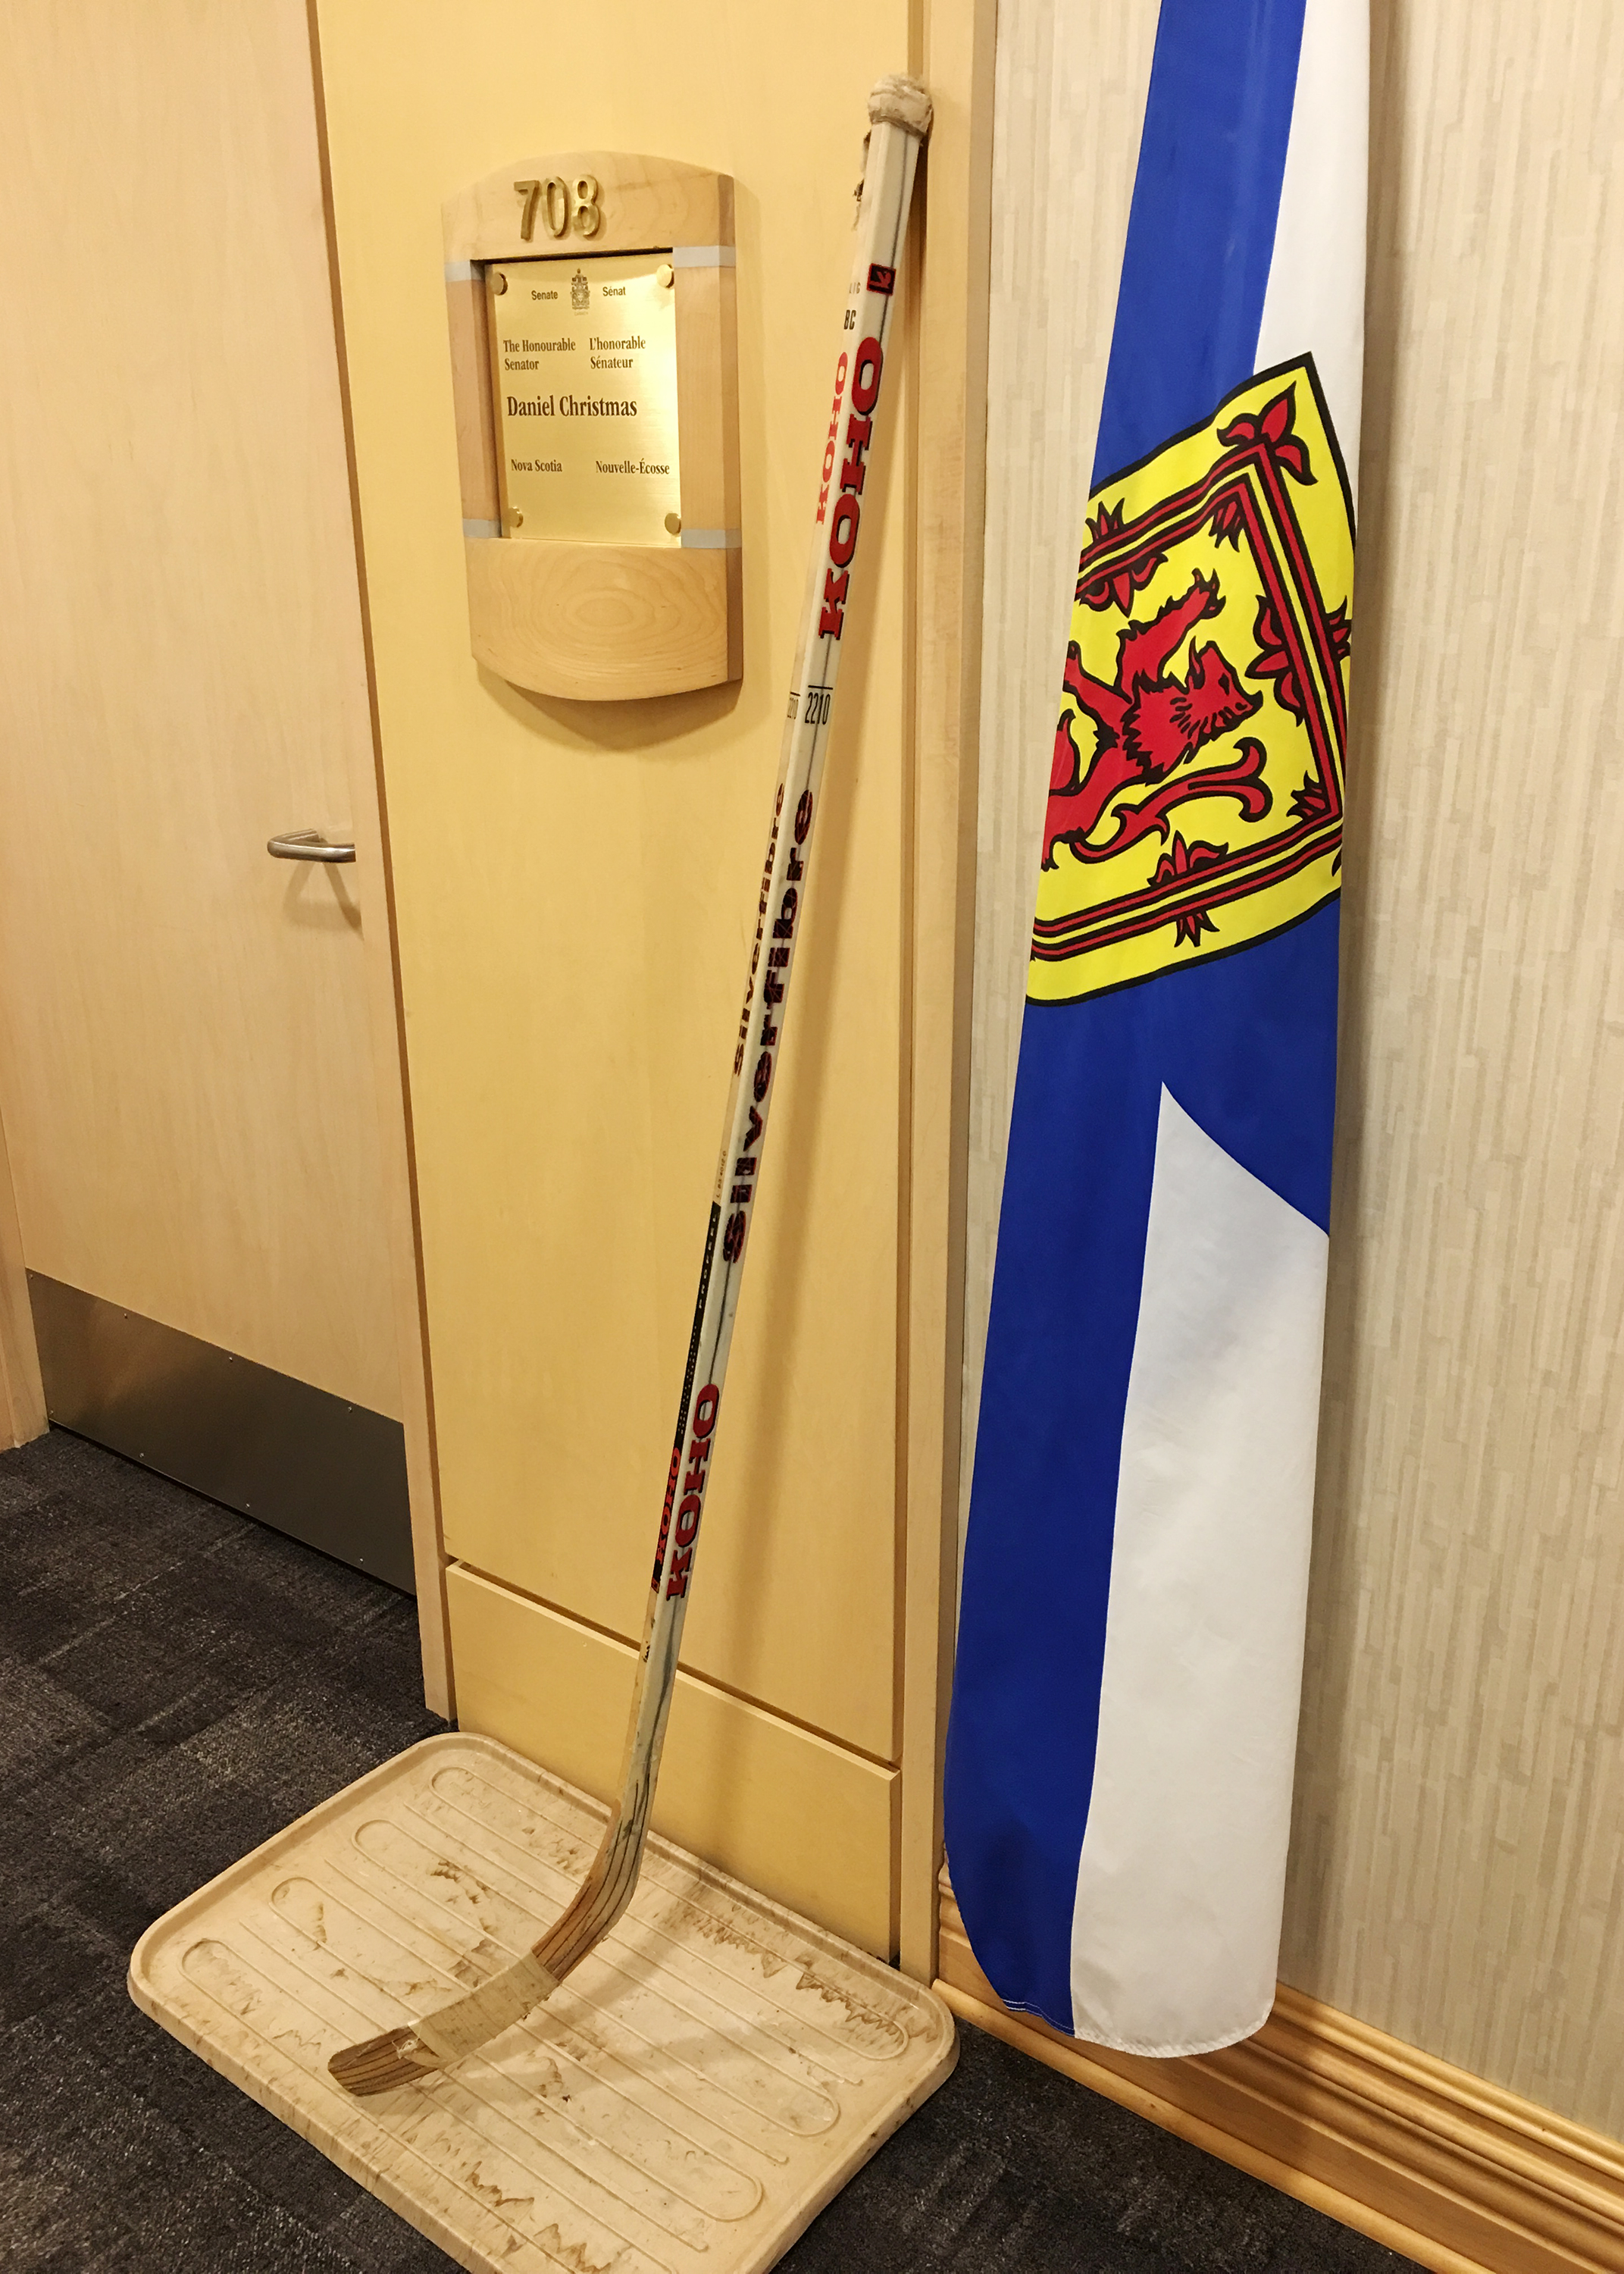 A hockey stick outside Senator Dan Christmas’s office.